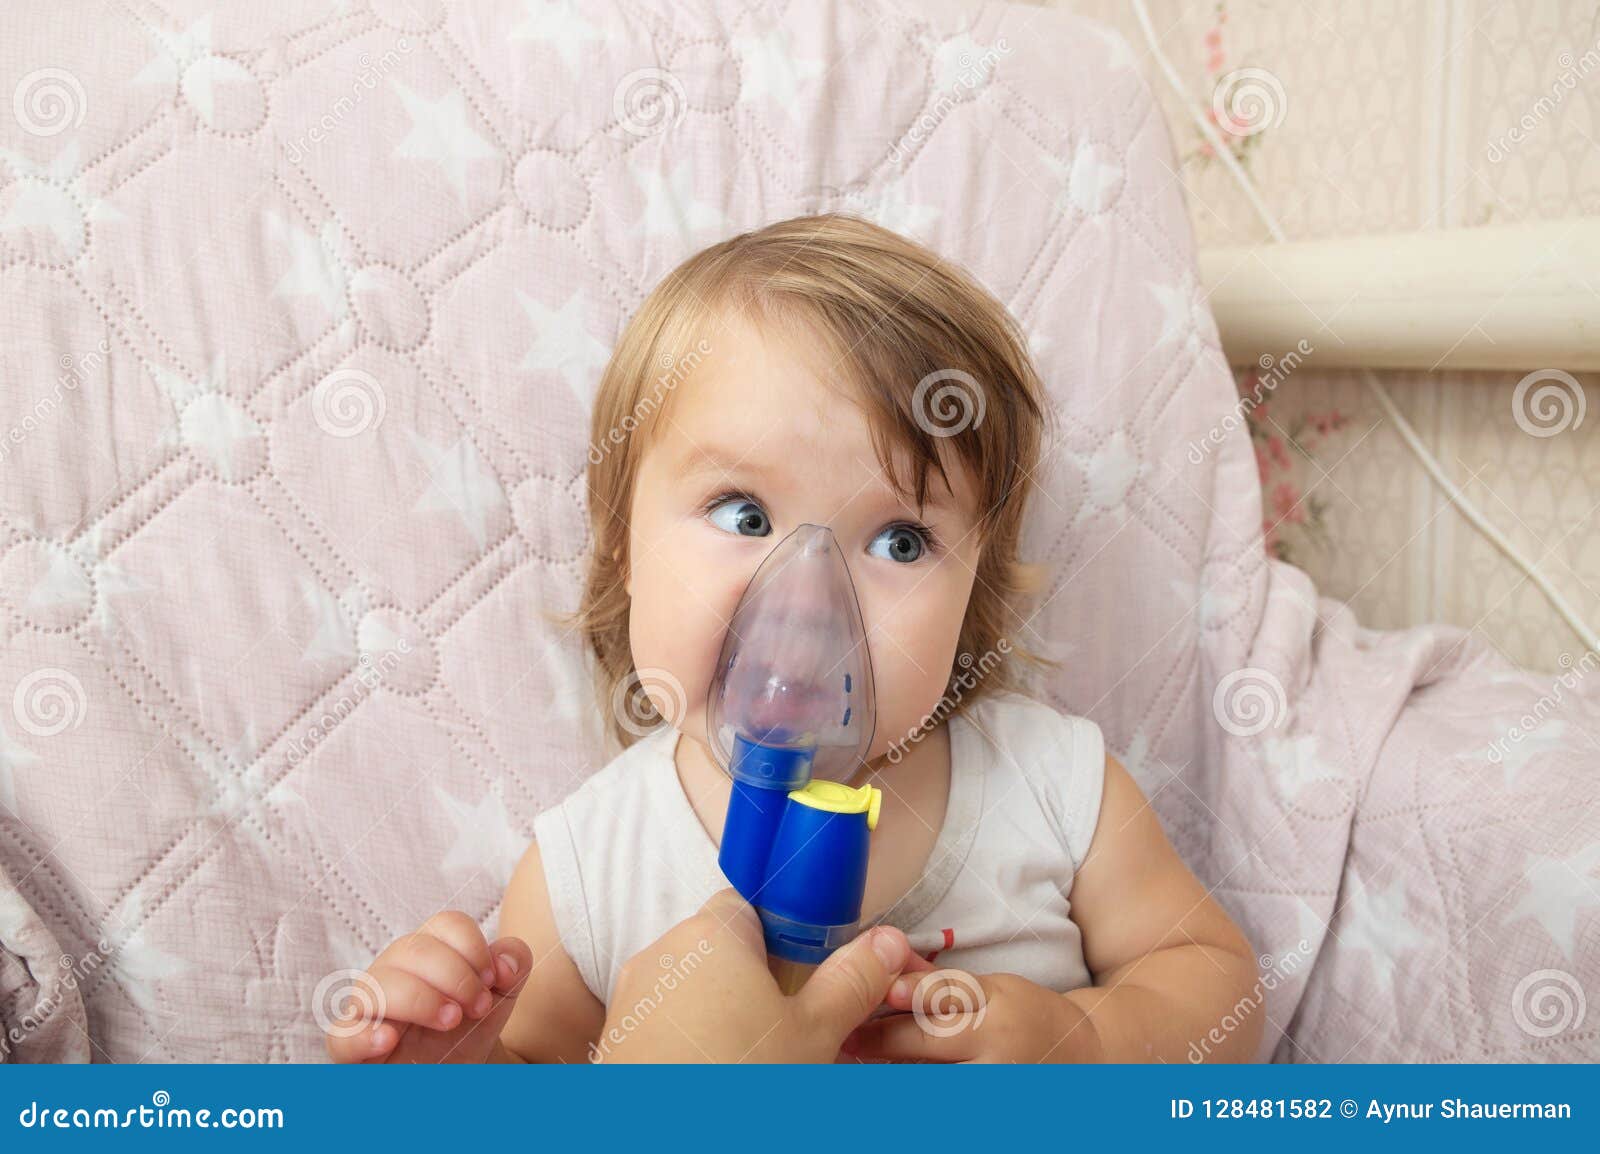 Máscara Enferma Del Nebulizador Del Uso Del Bebé Para La Inhalación,  Procedimiento Respiratorio Por Pulmonía O Tos Para El Niño Foto de archivo  - Imagen de casero, enfermo: 128481582